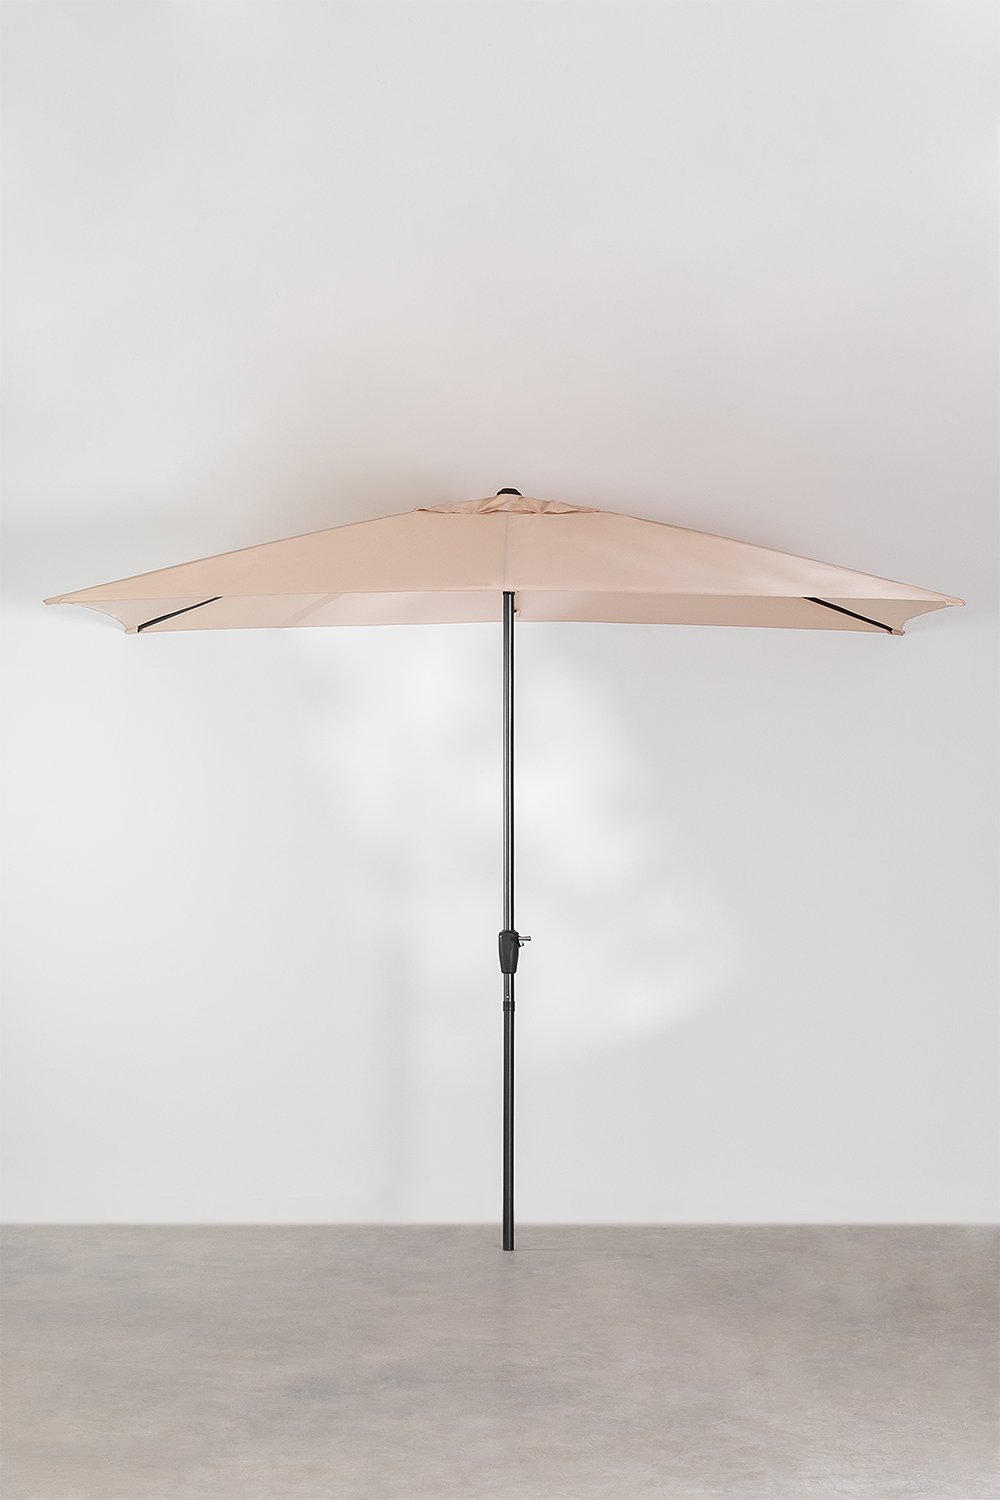 Paraplu van stof en staal (200x300 cm) Itzal, galerij beeld 1